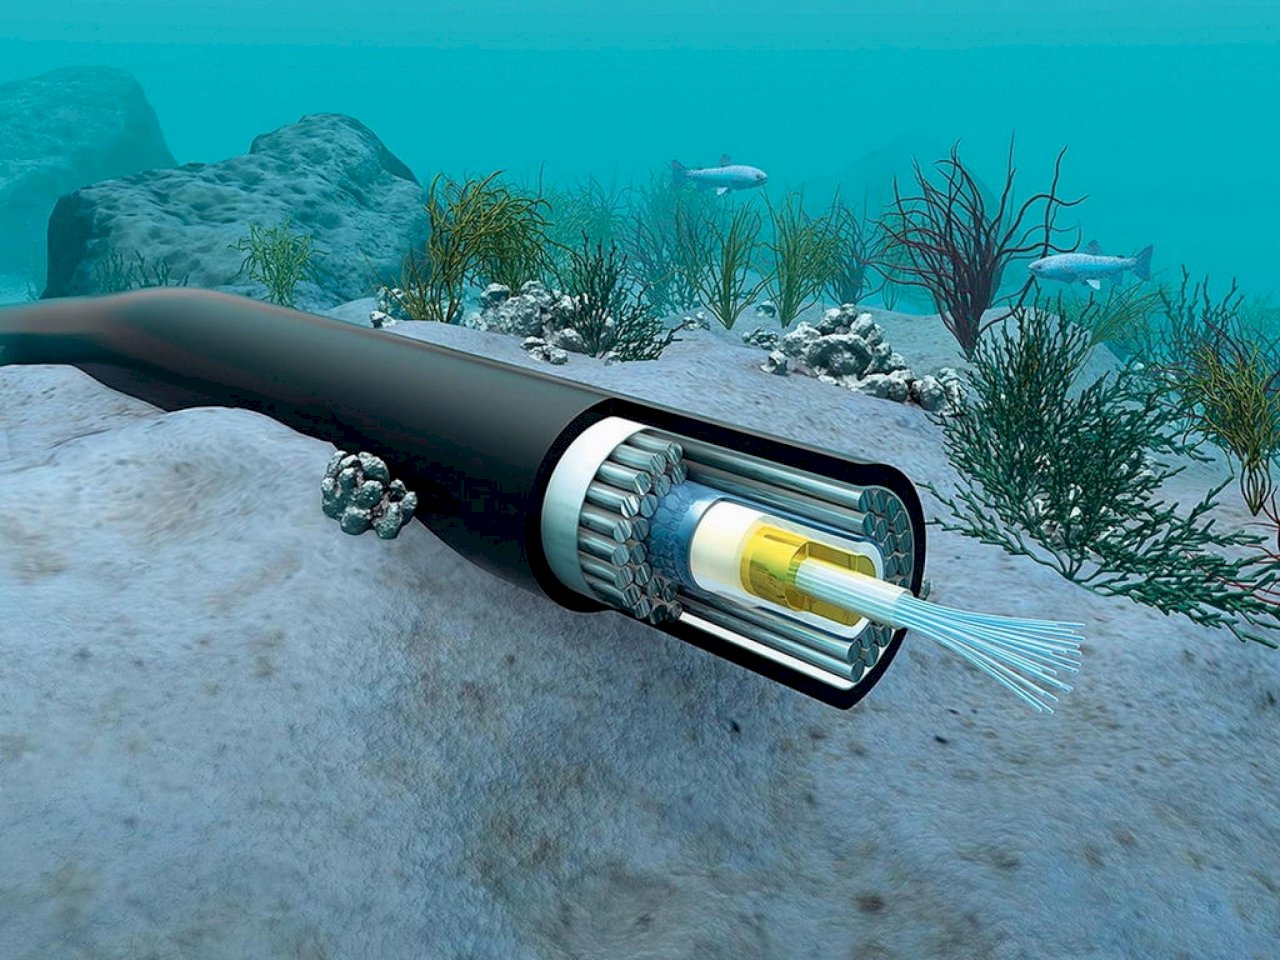 加入海底電纜計畫 美官員：太平洋島國需提升數位安全